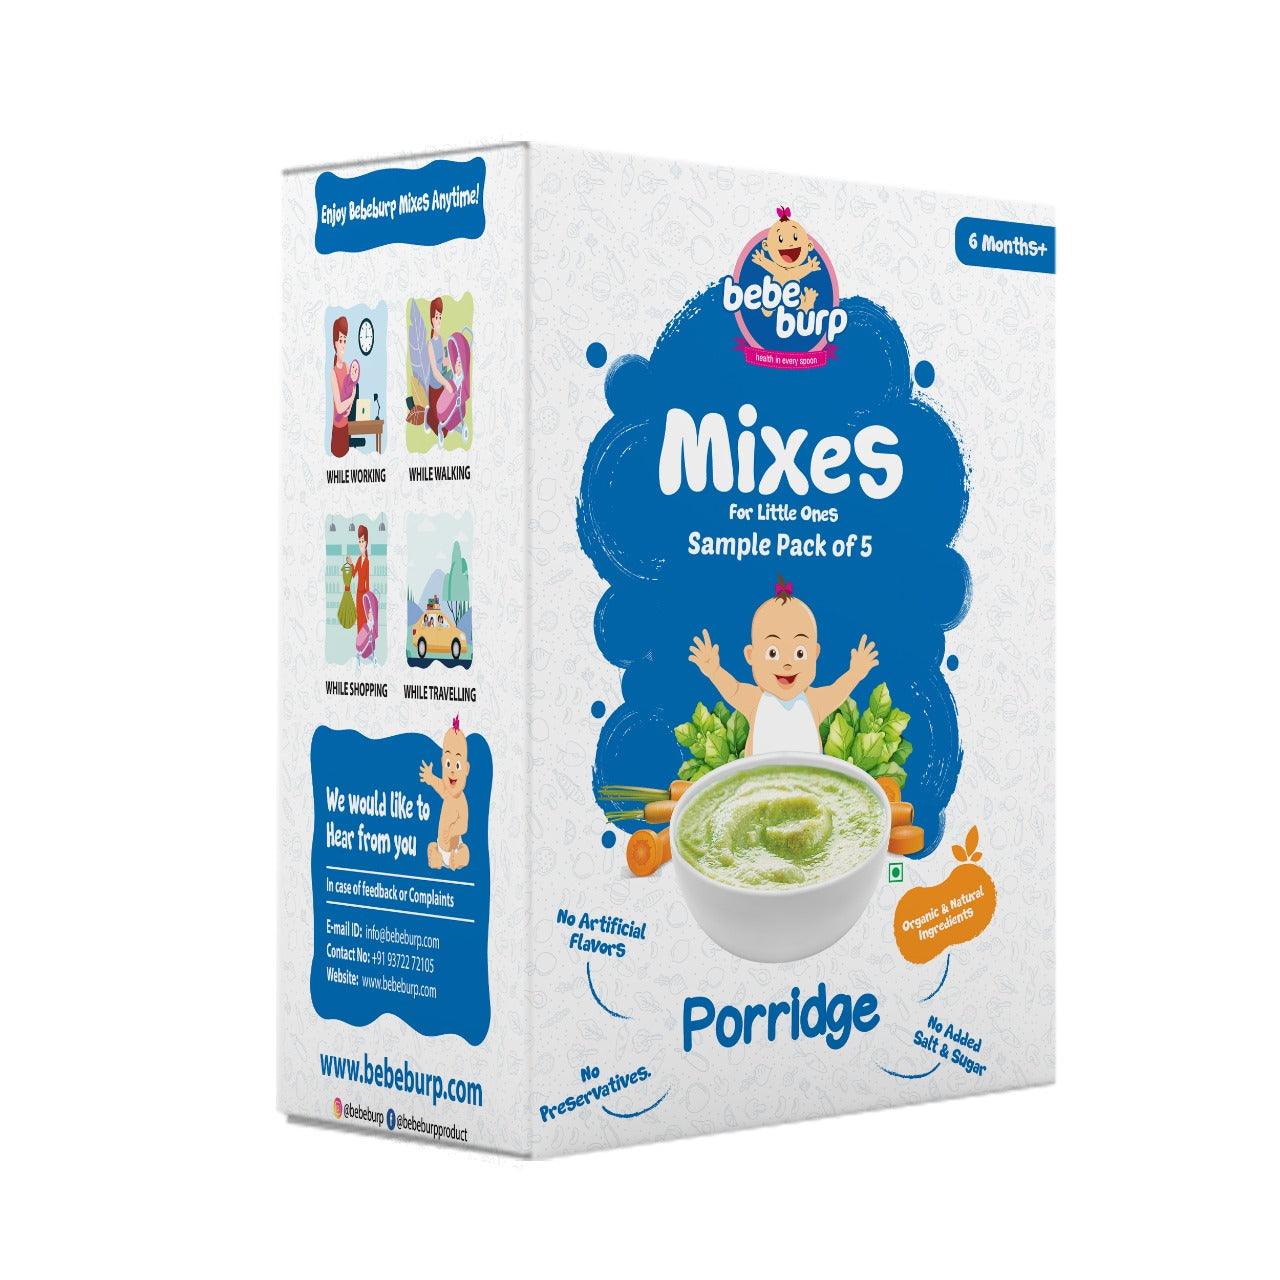 Mix Porridge Sample Pack Of 5 - 30 Gms Each - BebeBurp